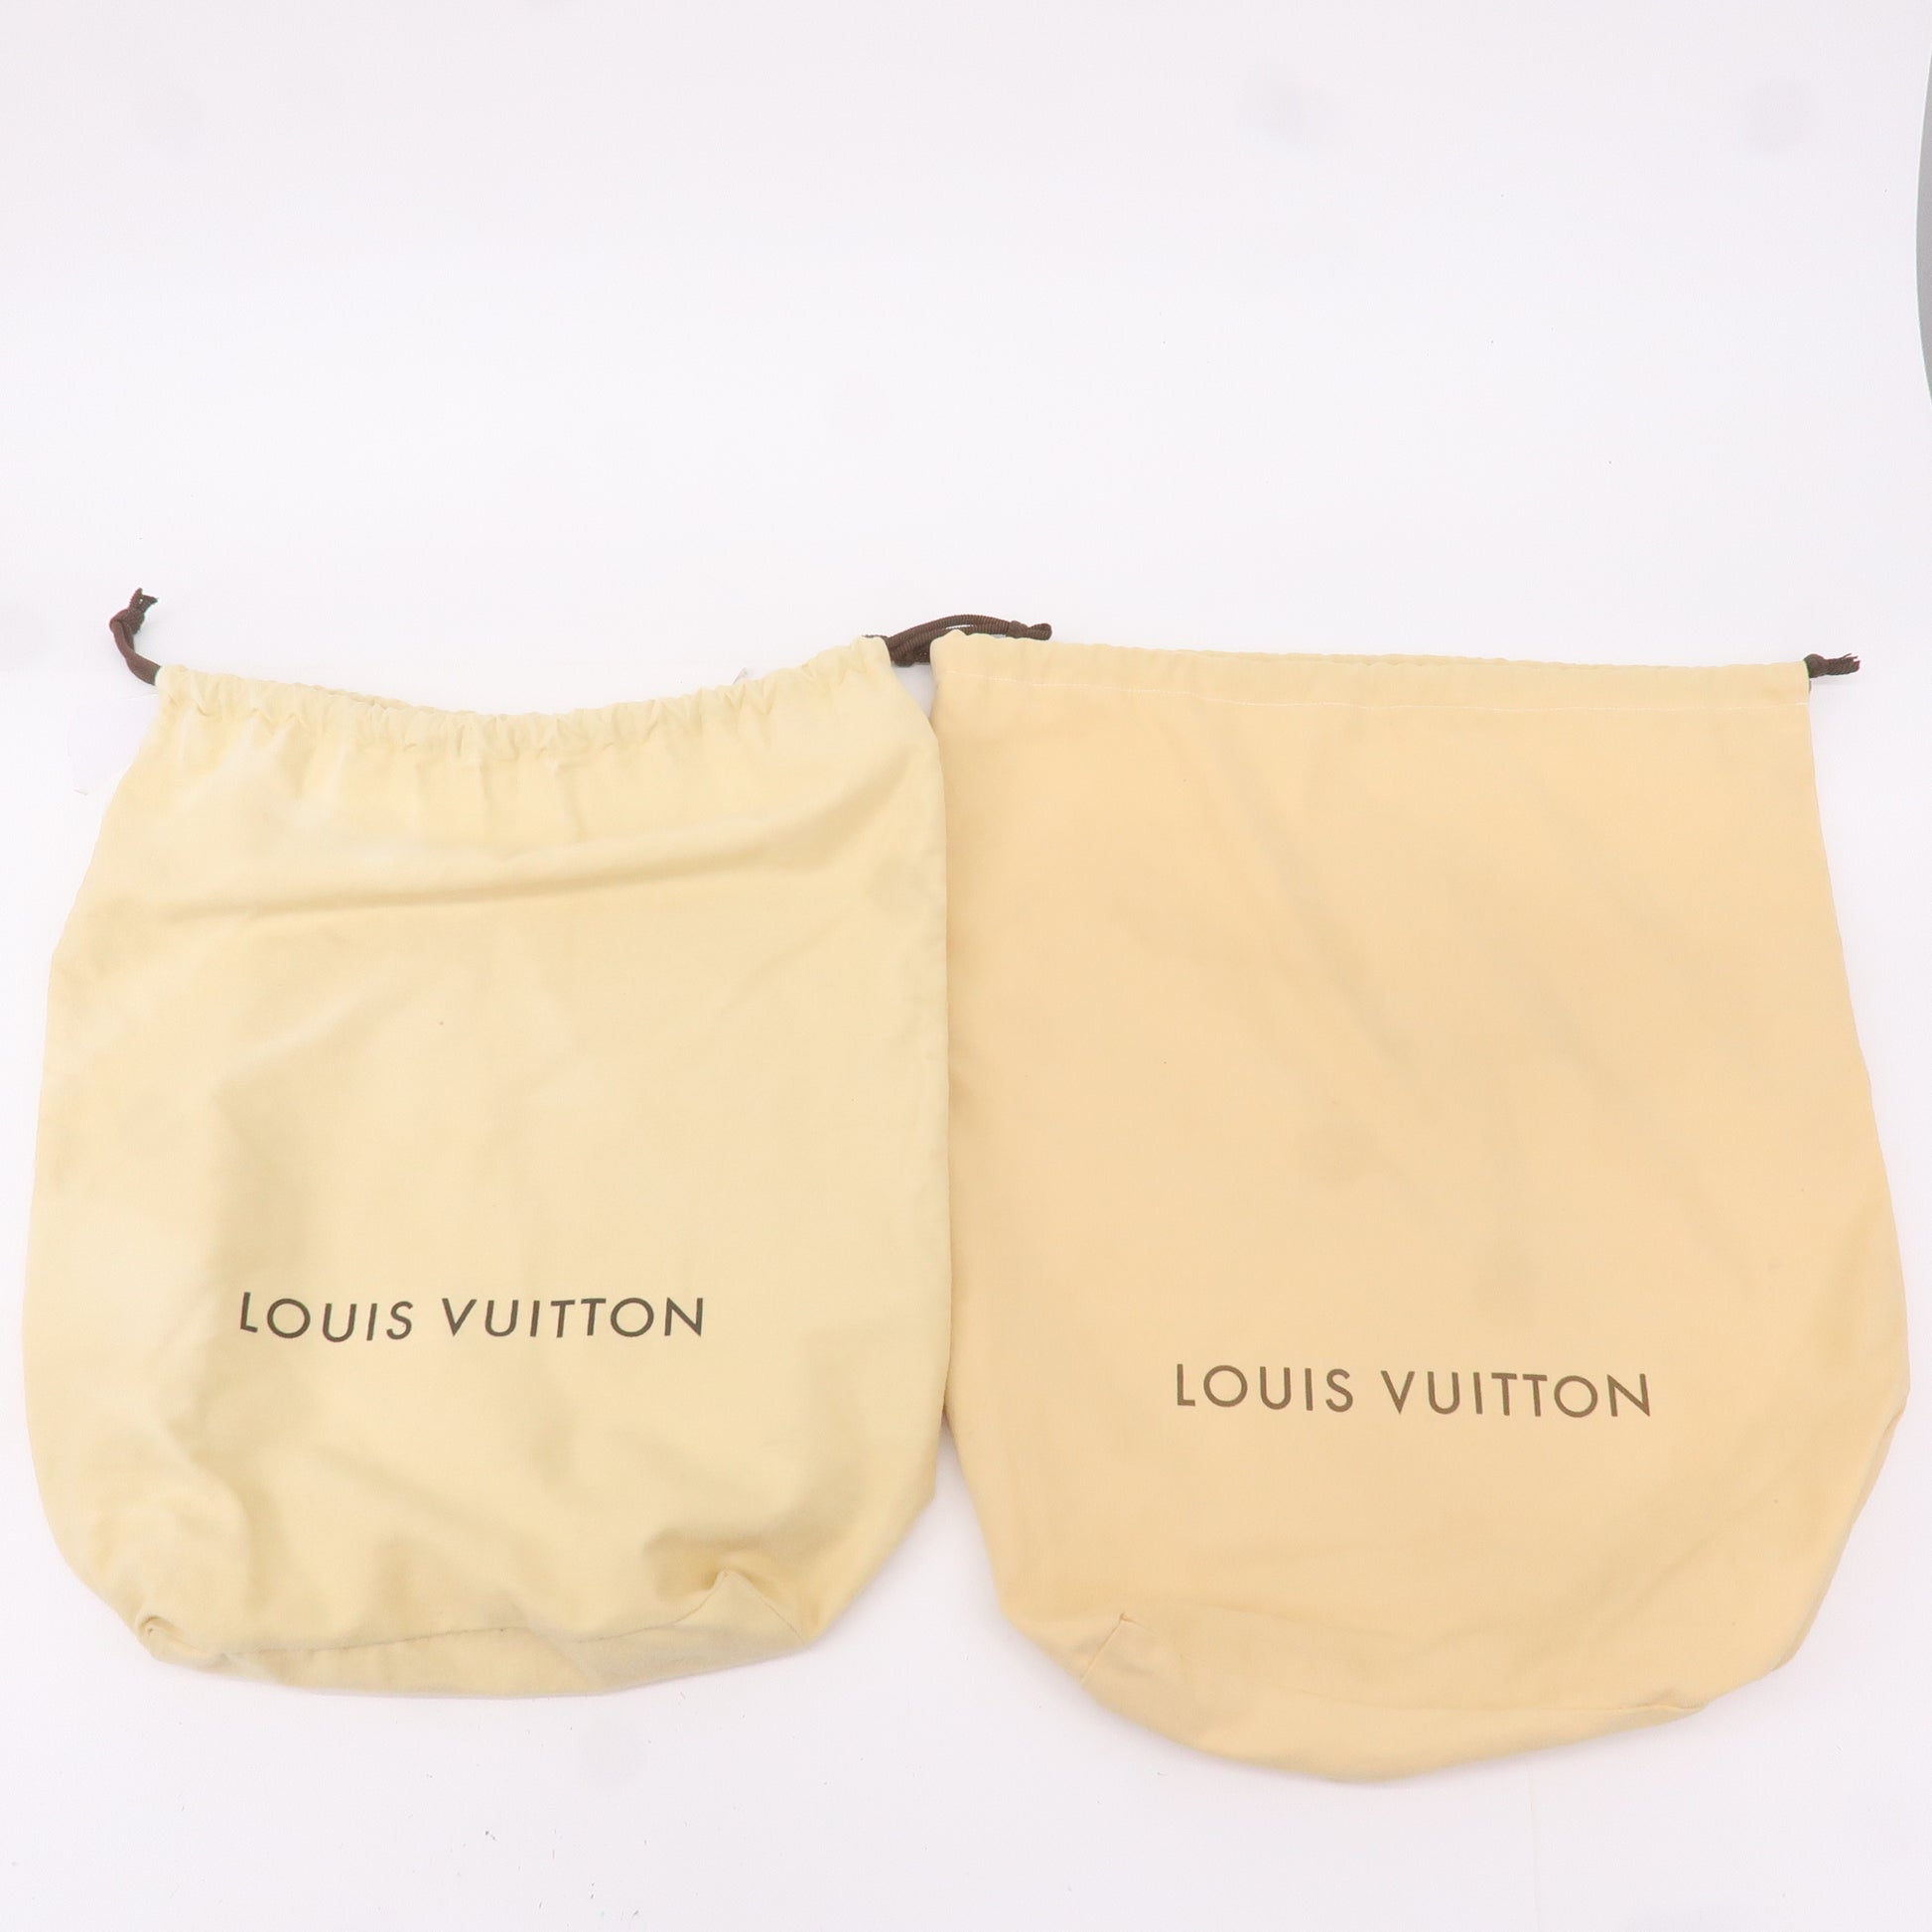 Louis Vuitton Dust Bag Cover